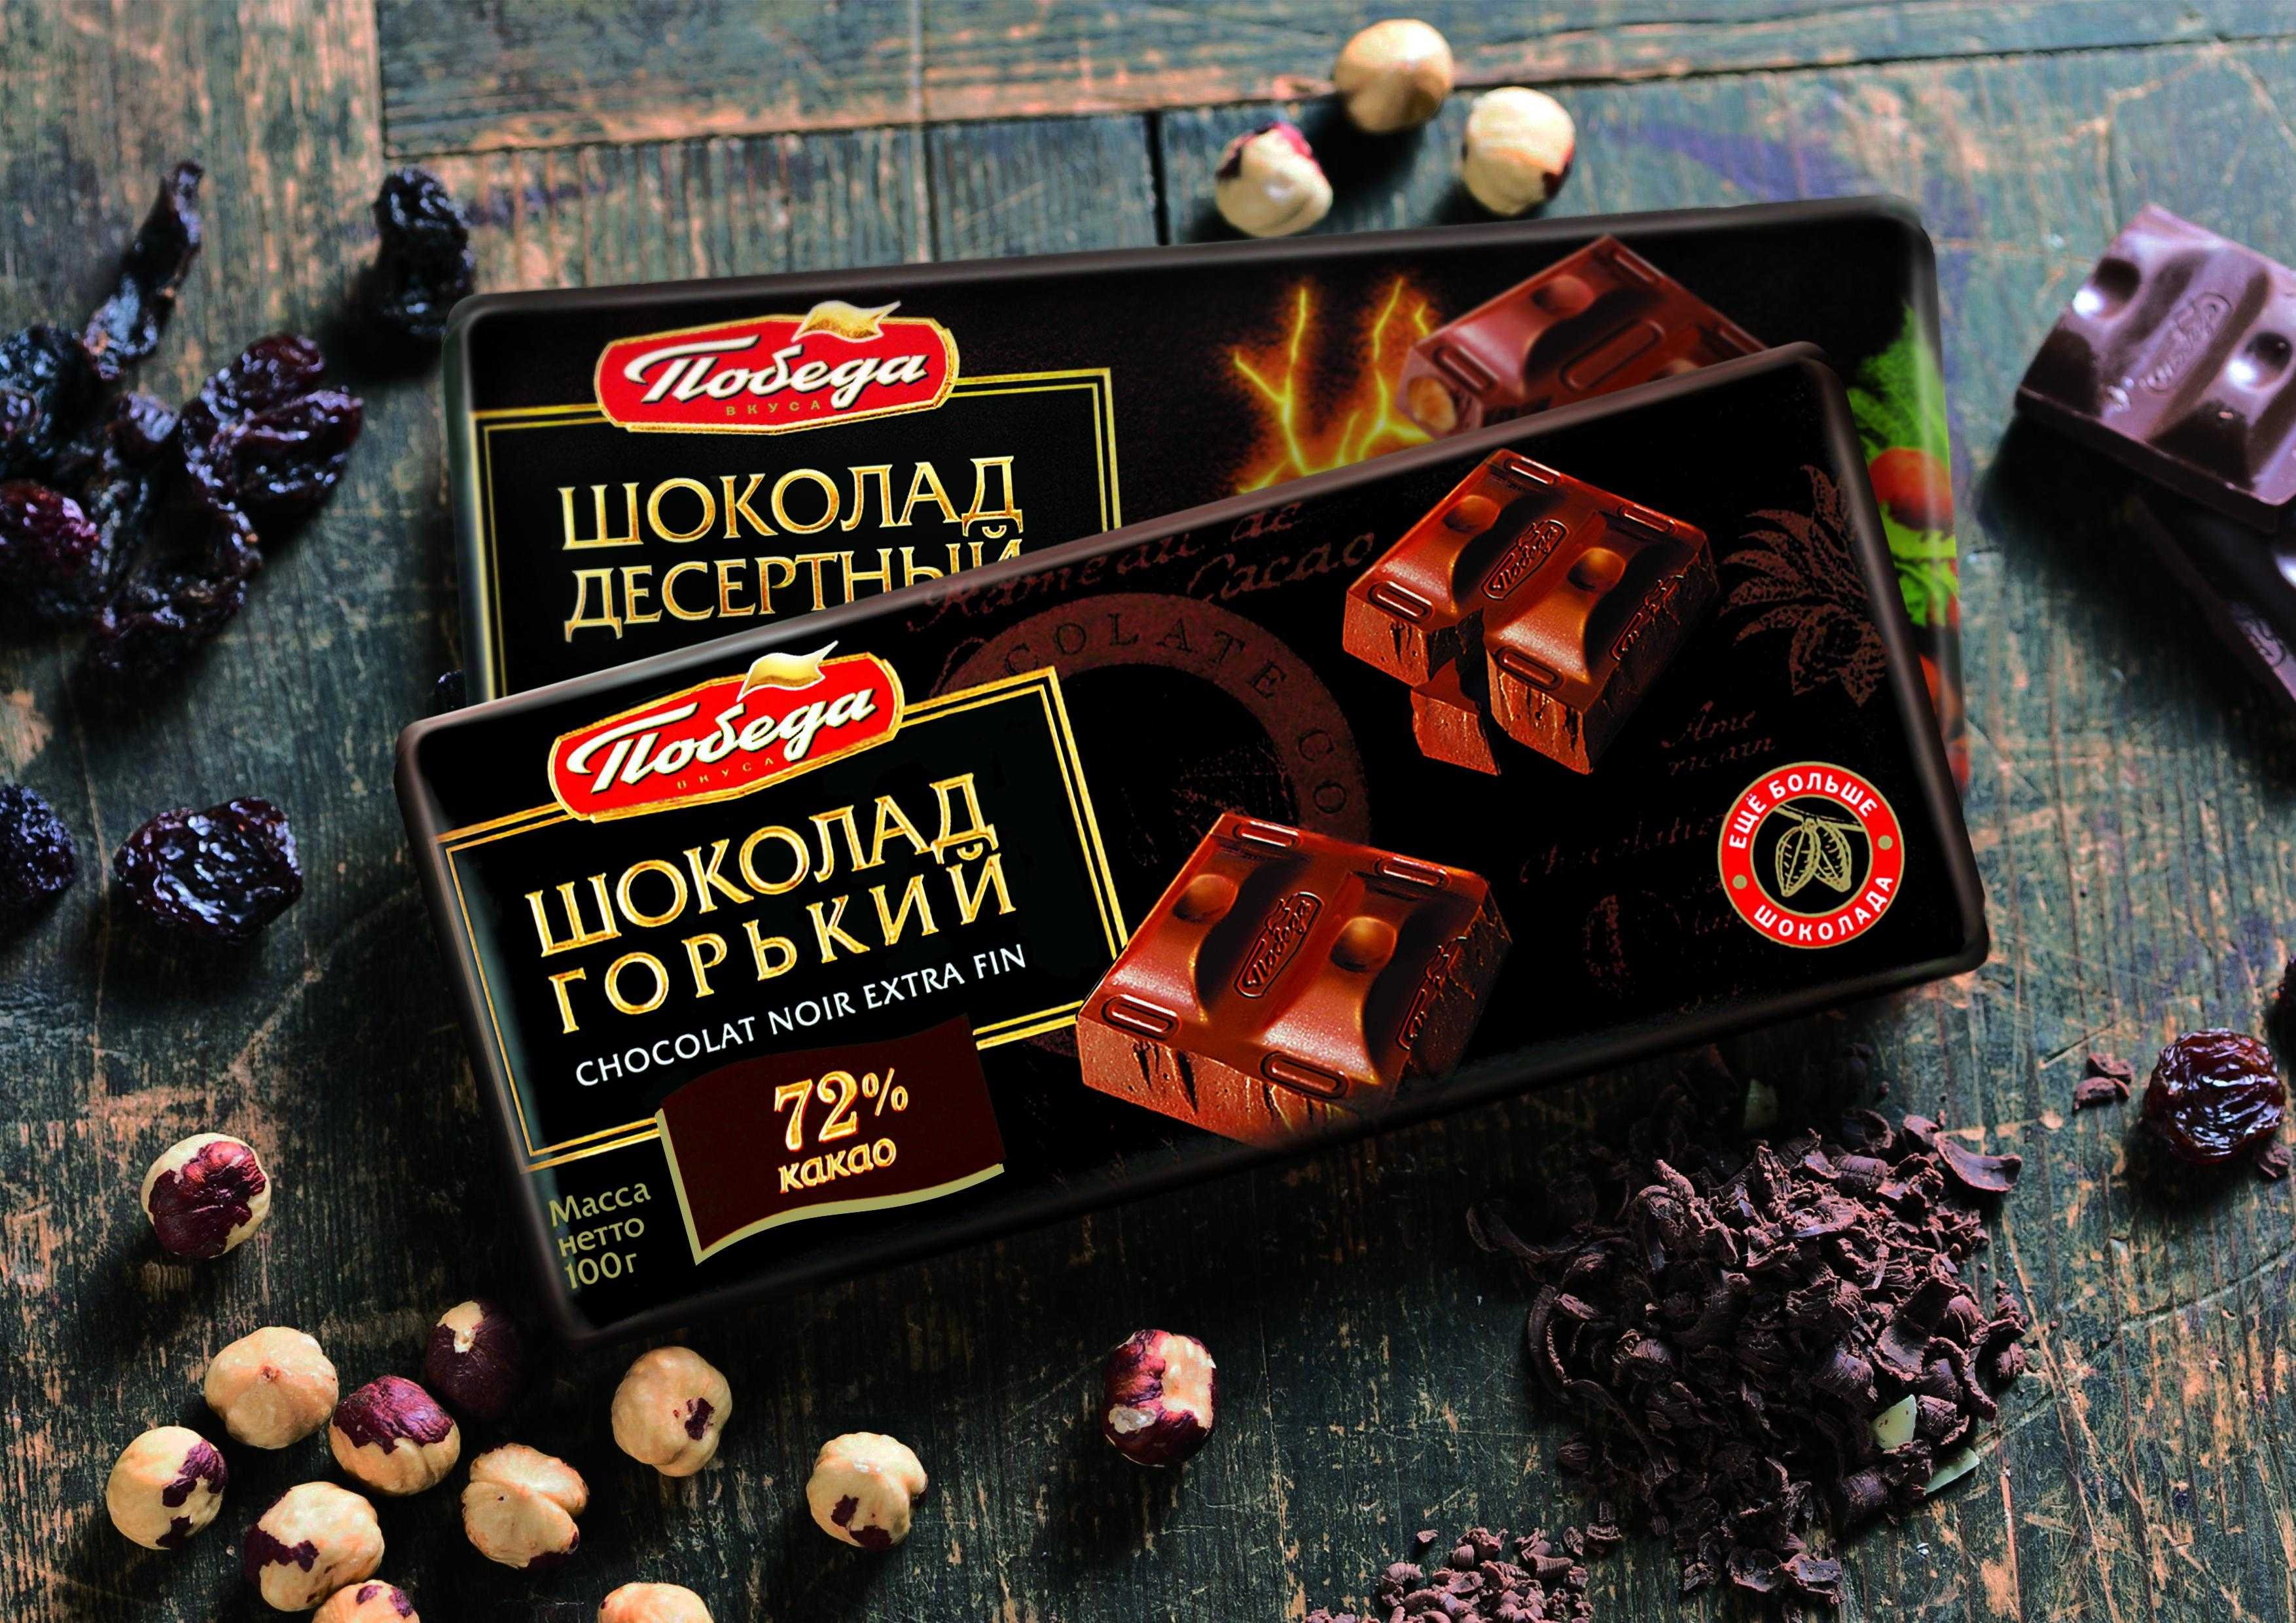 Фабрика горького шоколада. Шоколадная фабрика победа Егорьевск. Шоколад победа. Шоколадка победа. Шоколад победа реклама.